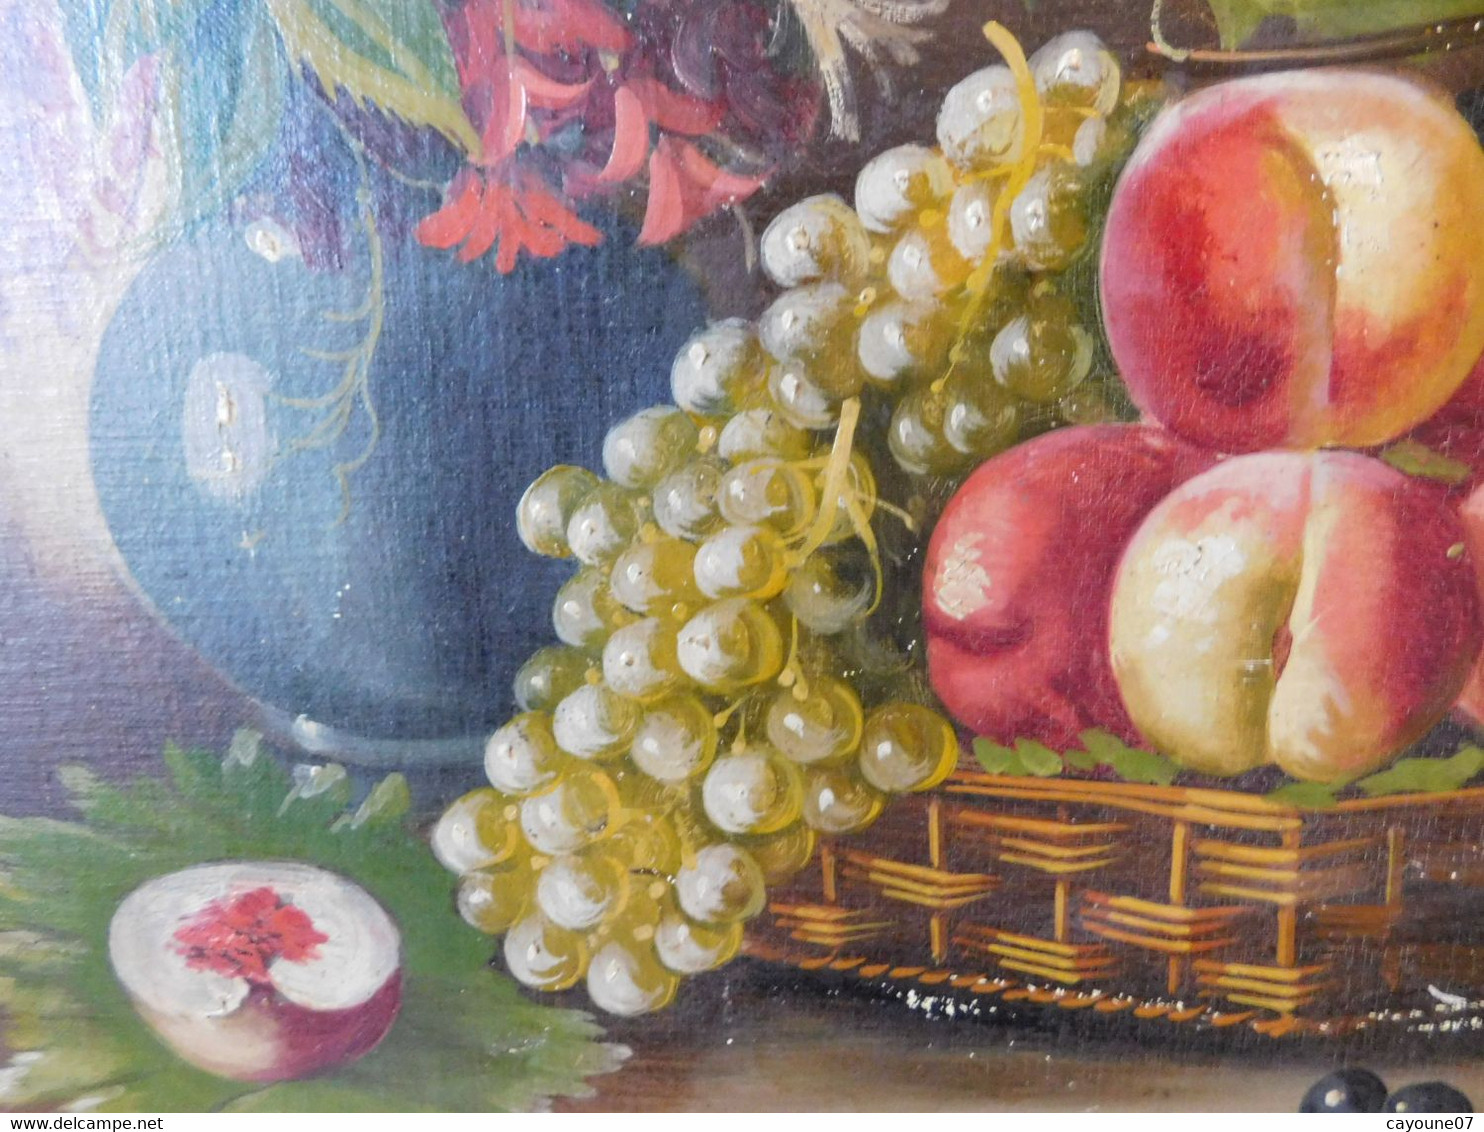 MORTELAZ (XIX-XXème) huile sur toile grand format nature morte aux raisins pêches et bouquet fleuri